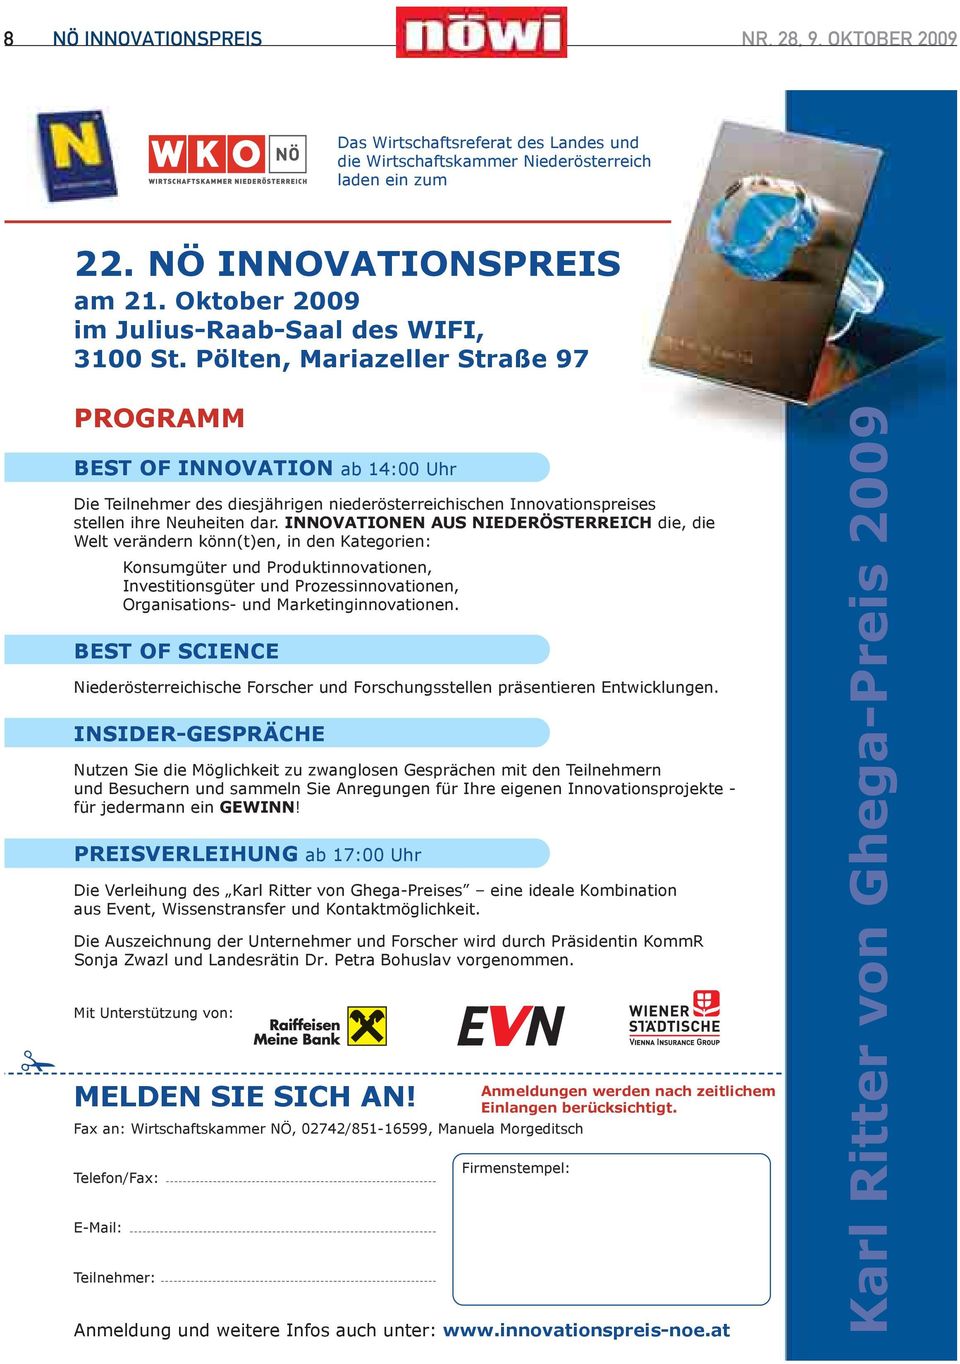 Pölten, Mariazeller Straße 97 PROGRAMM BEST OF INNOVATION ab 14:00 Uhr Die Teilnehmer des diesjährigen niederösterreichischen Innovationspreises stellen ihre Neuheiten dar.